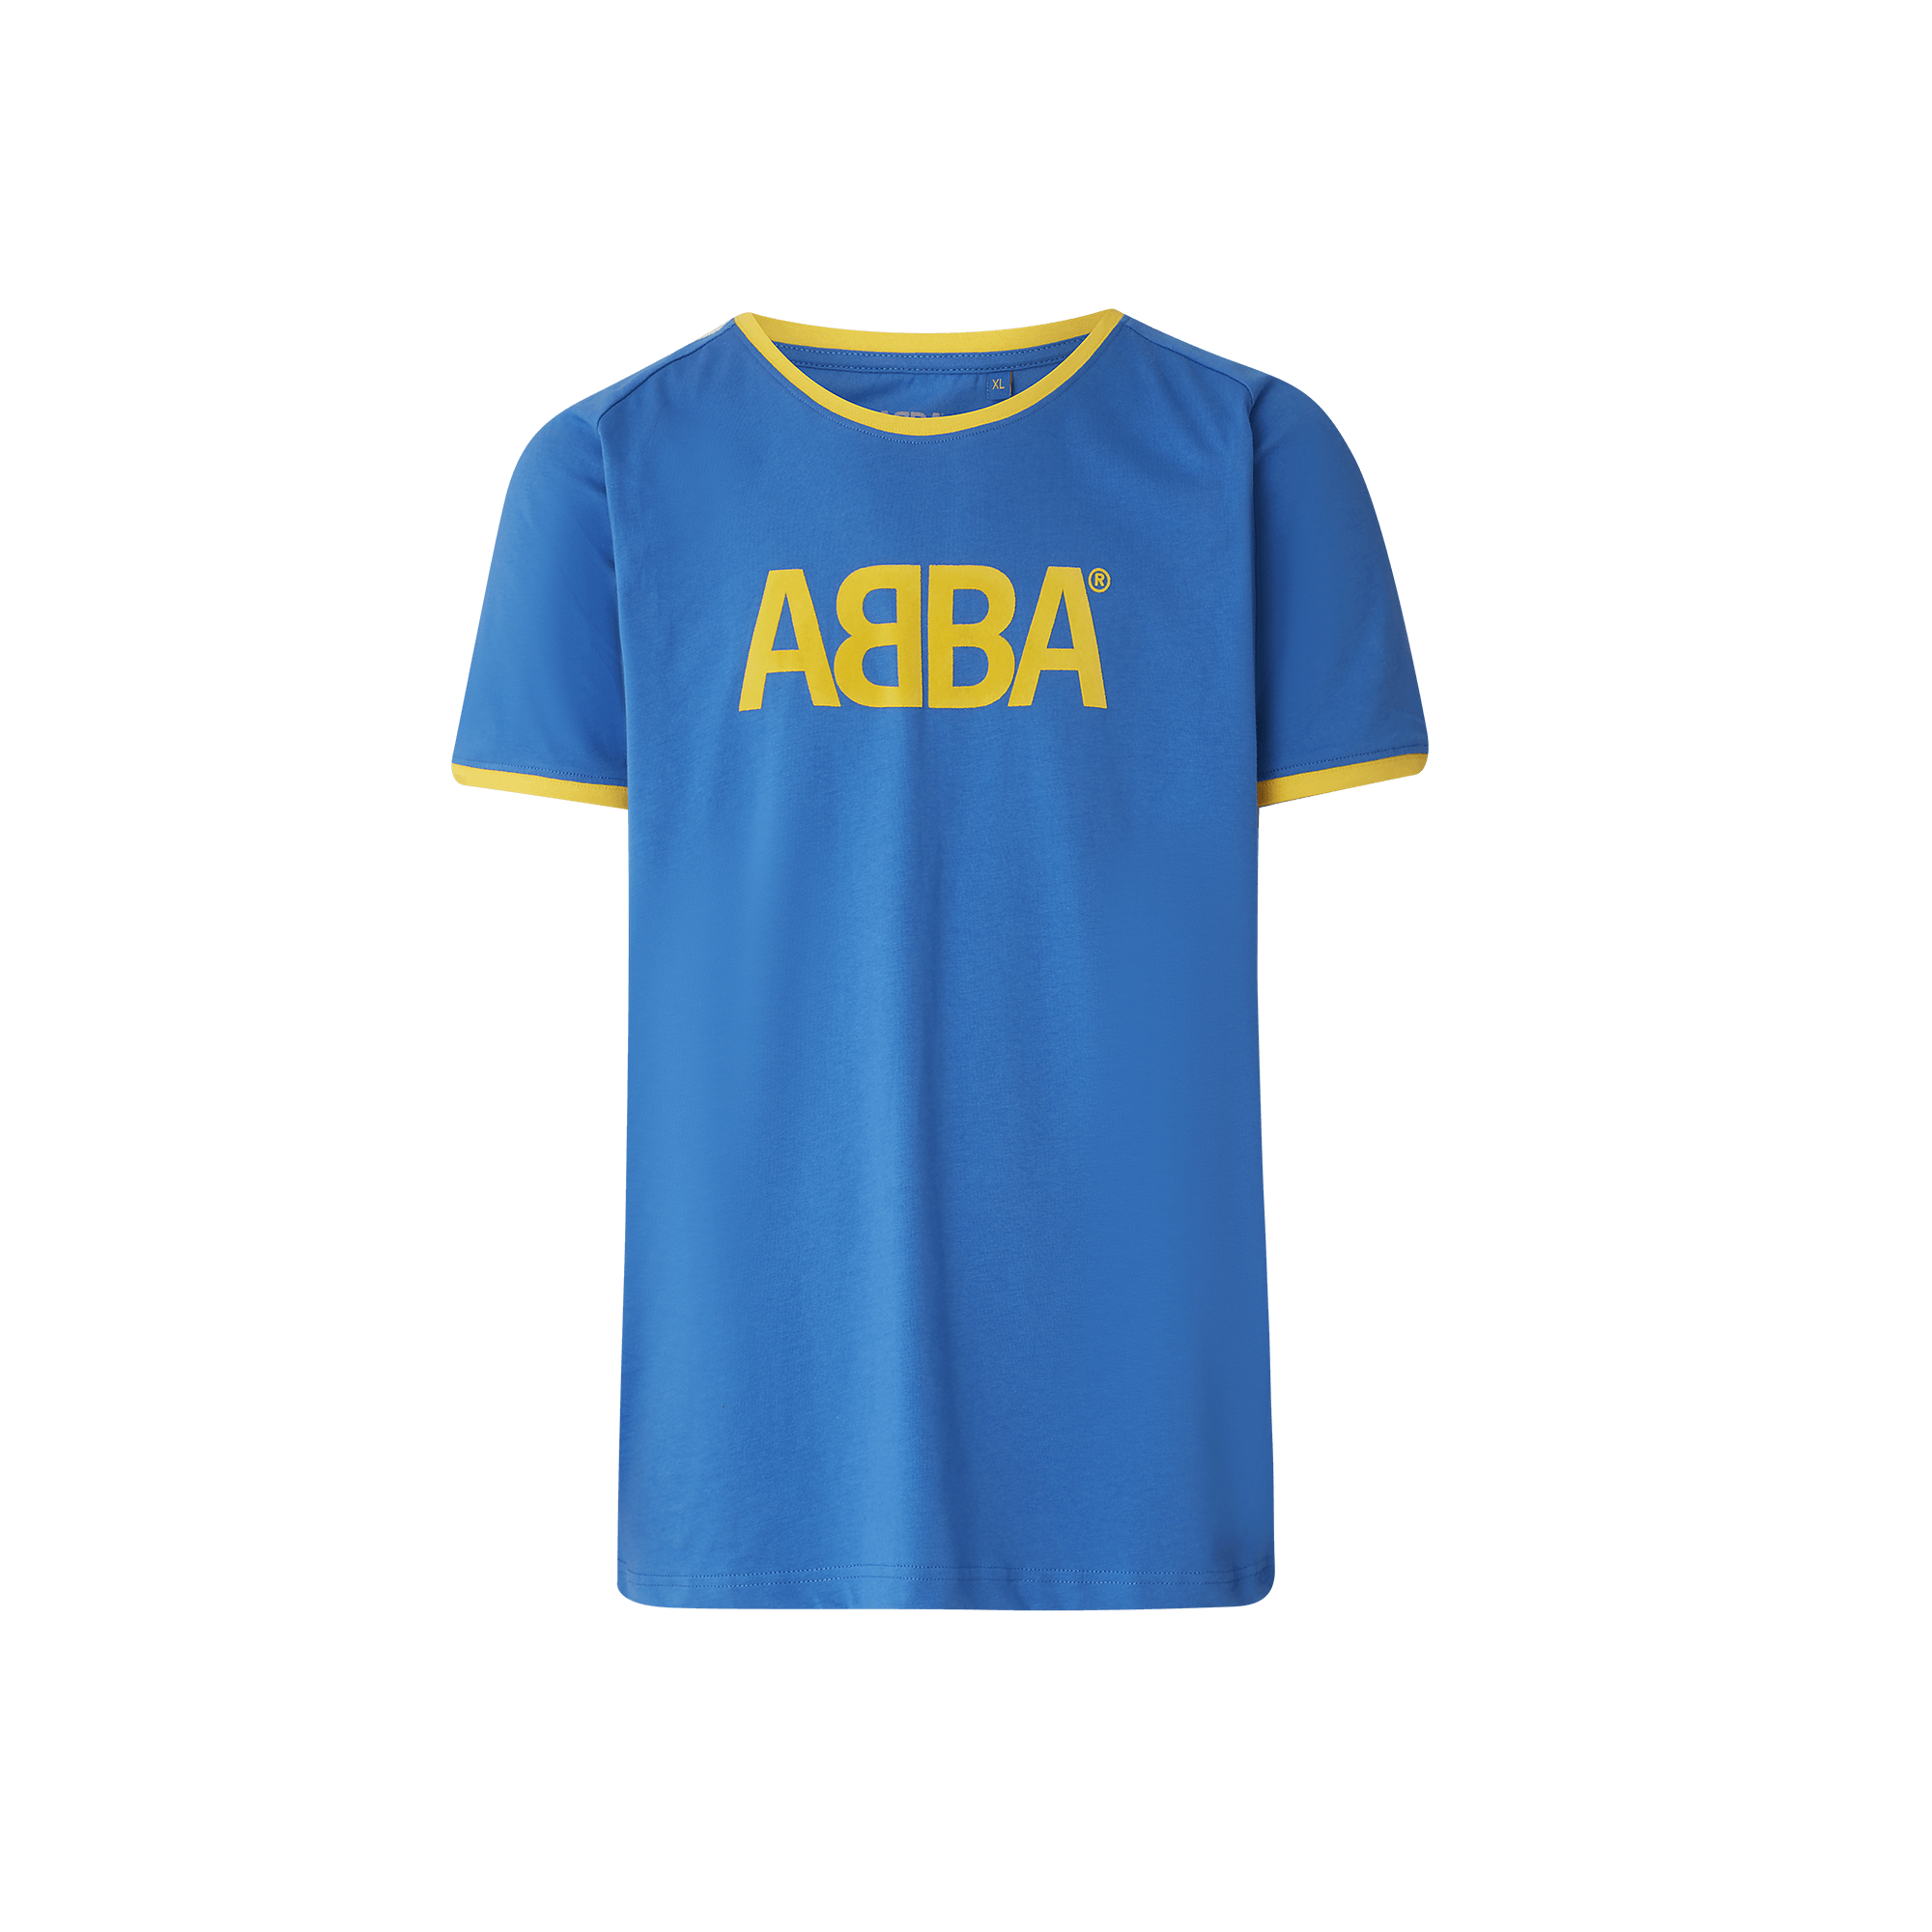 ABBA Sweden t-shirt